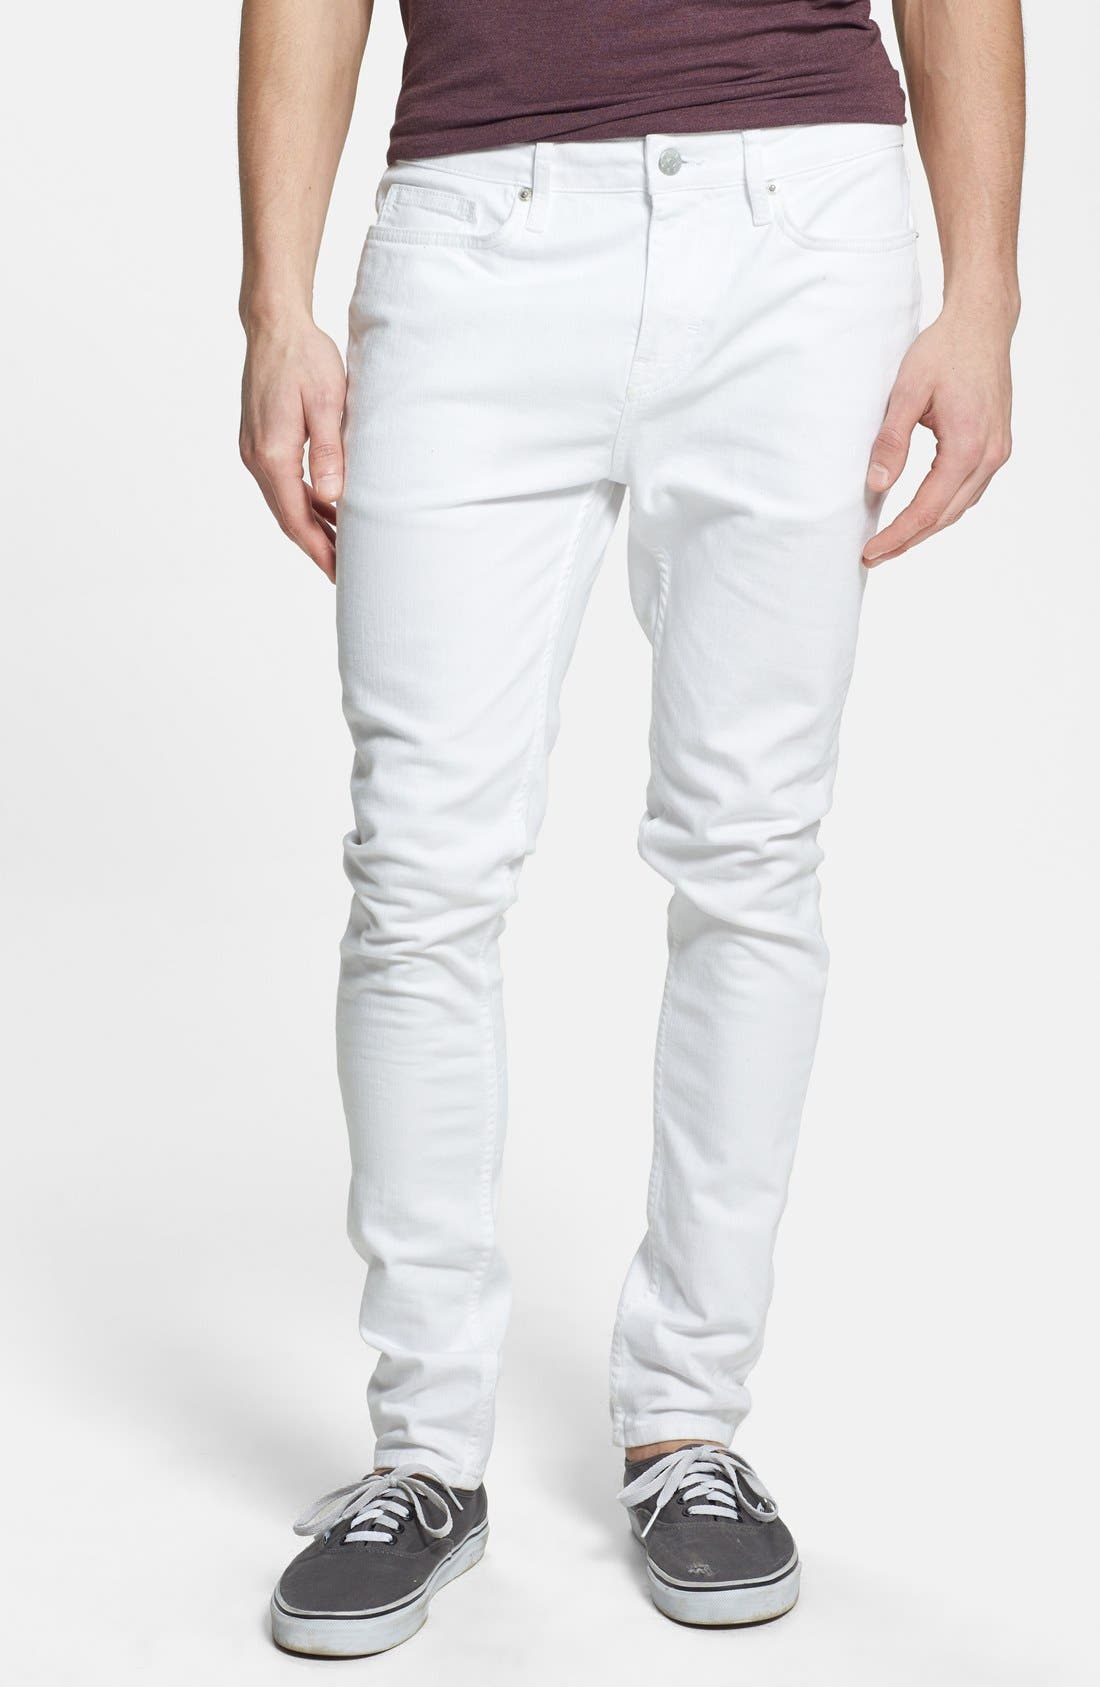 nordstrom topman jeans